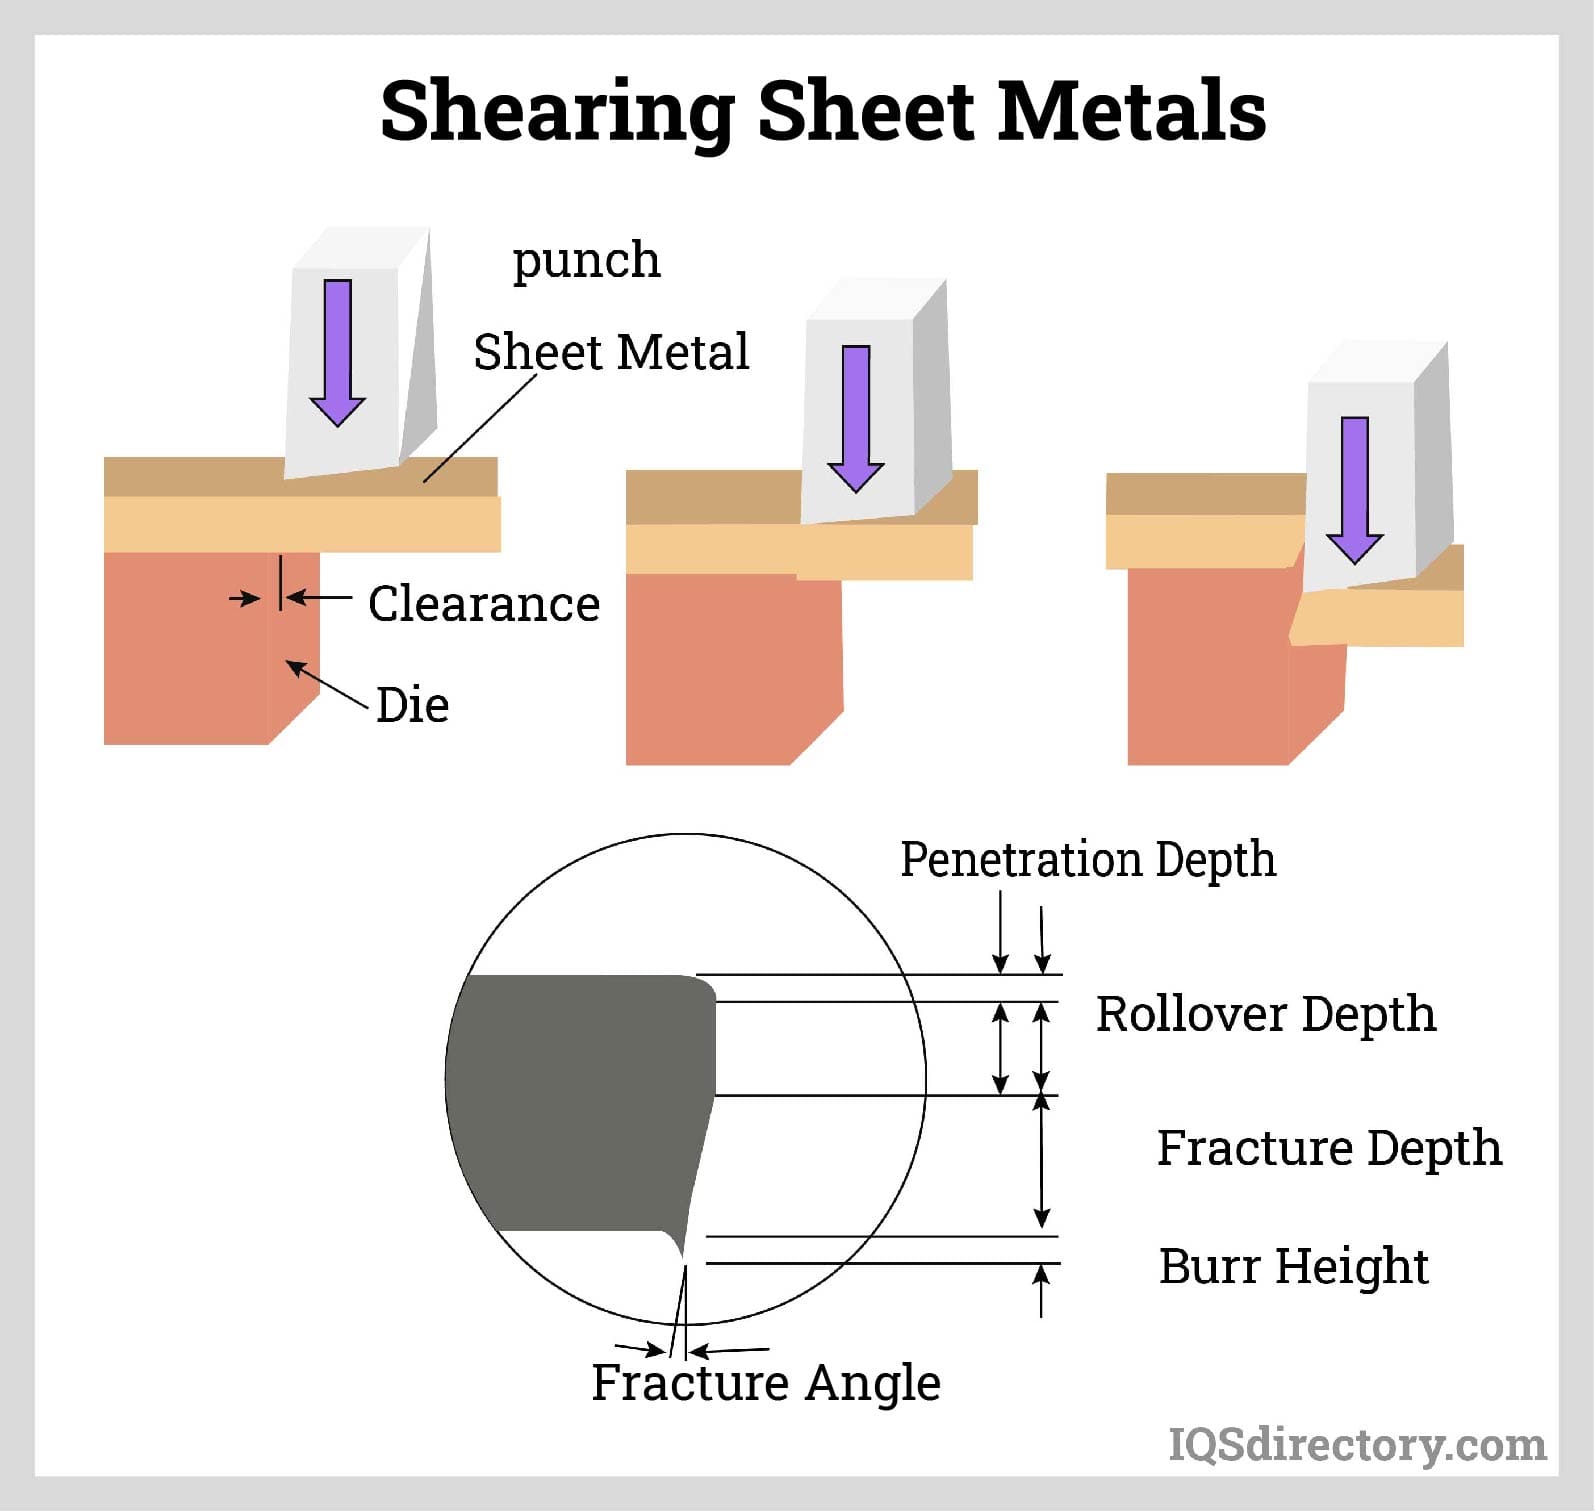 Shearing the sheet metals